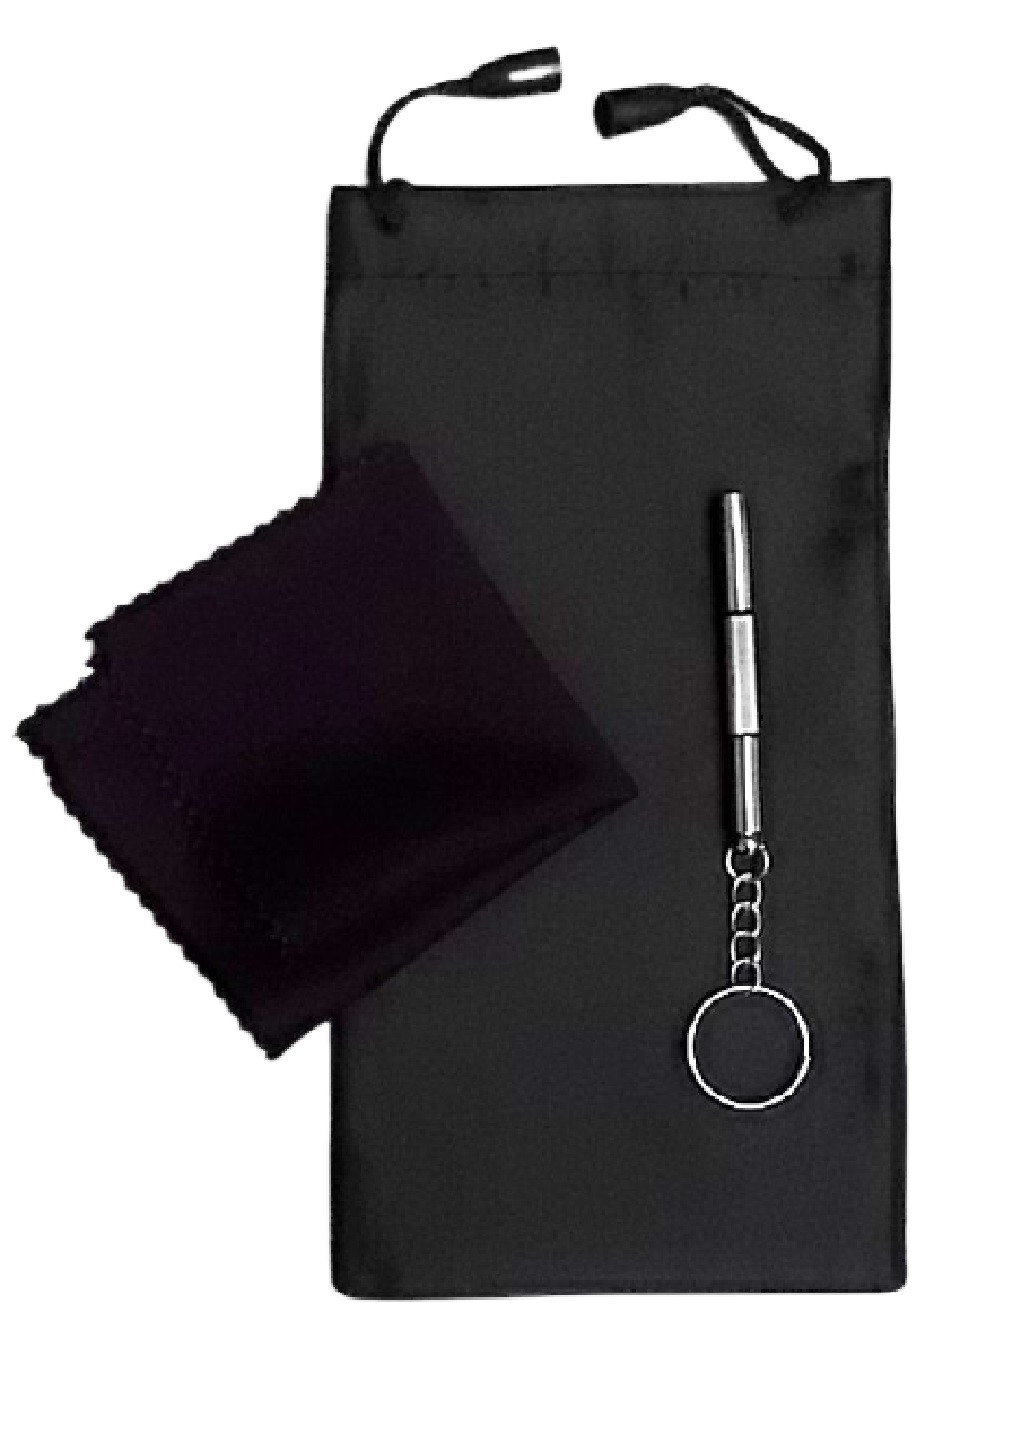 Набор для ухода за очками A&Co. мешочек однотонный чёрный текстиль